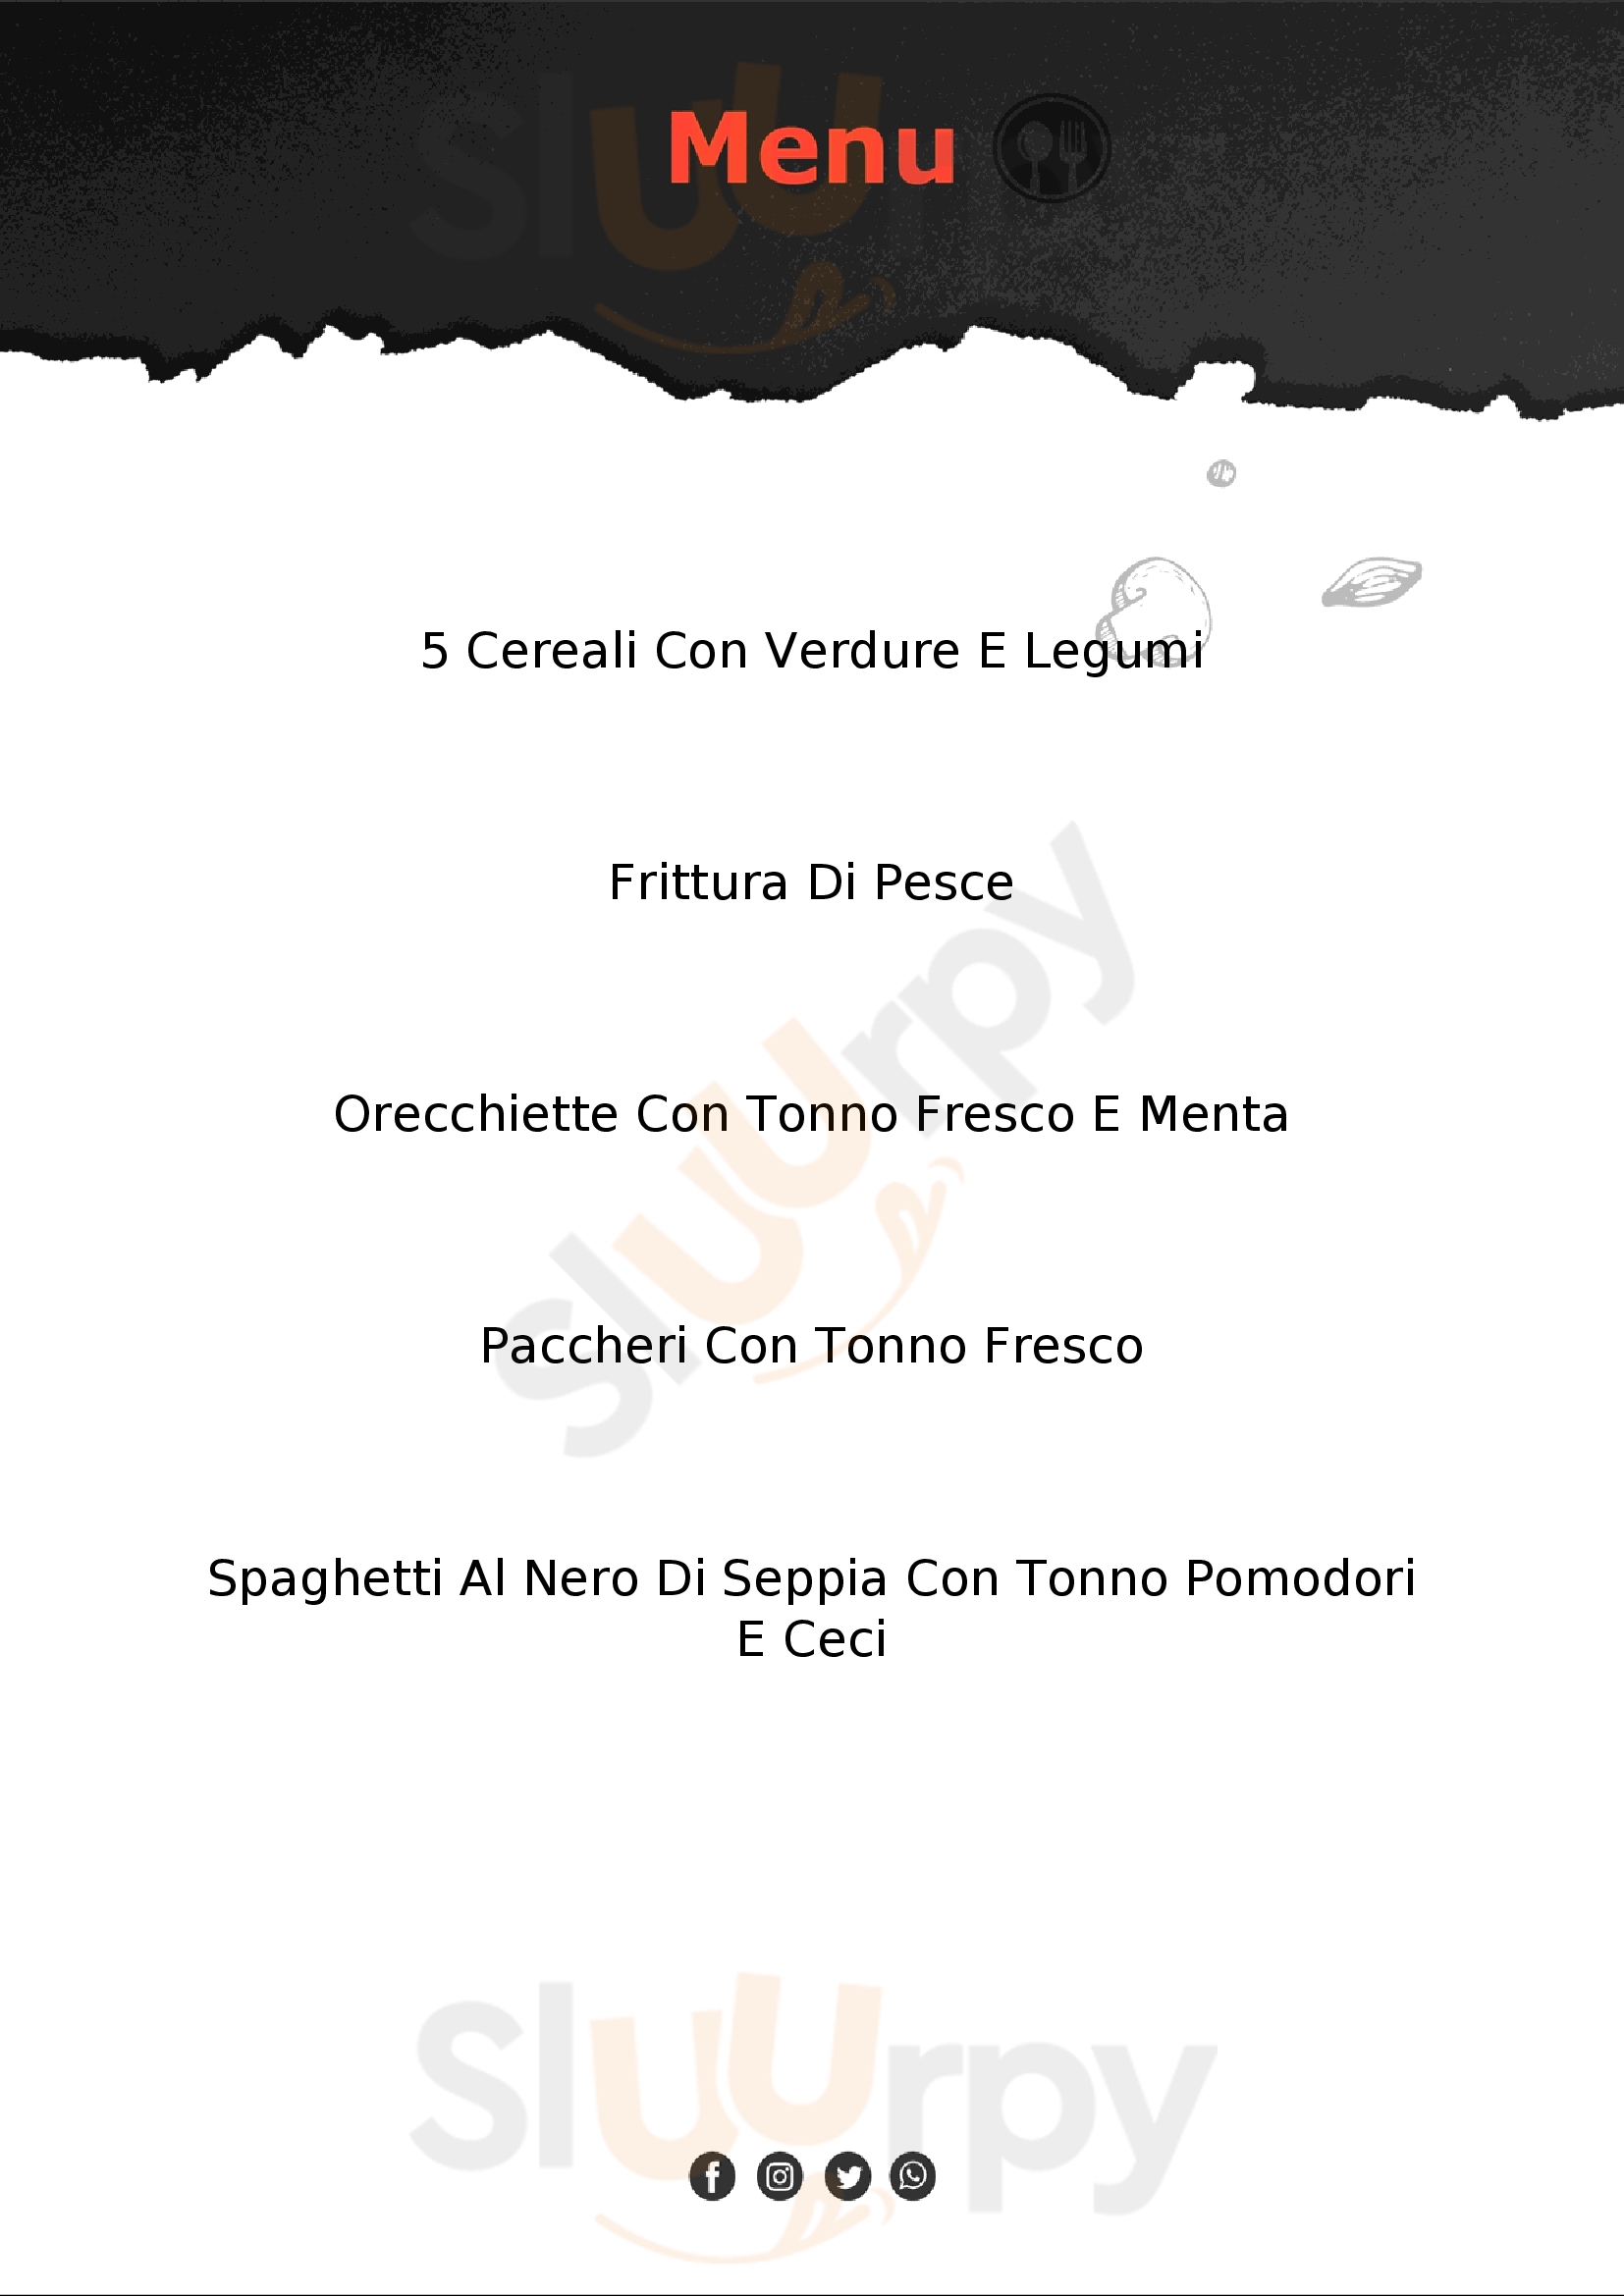 Live Cafè & Restaurant Modena menù 1 pagina